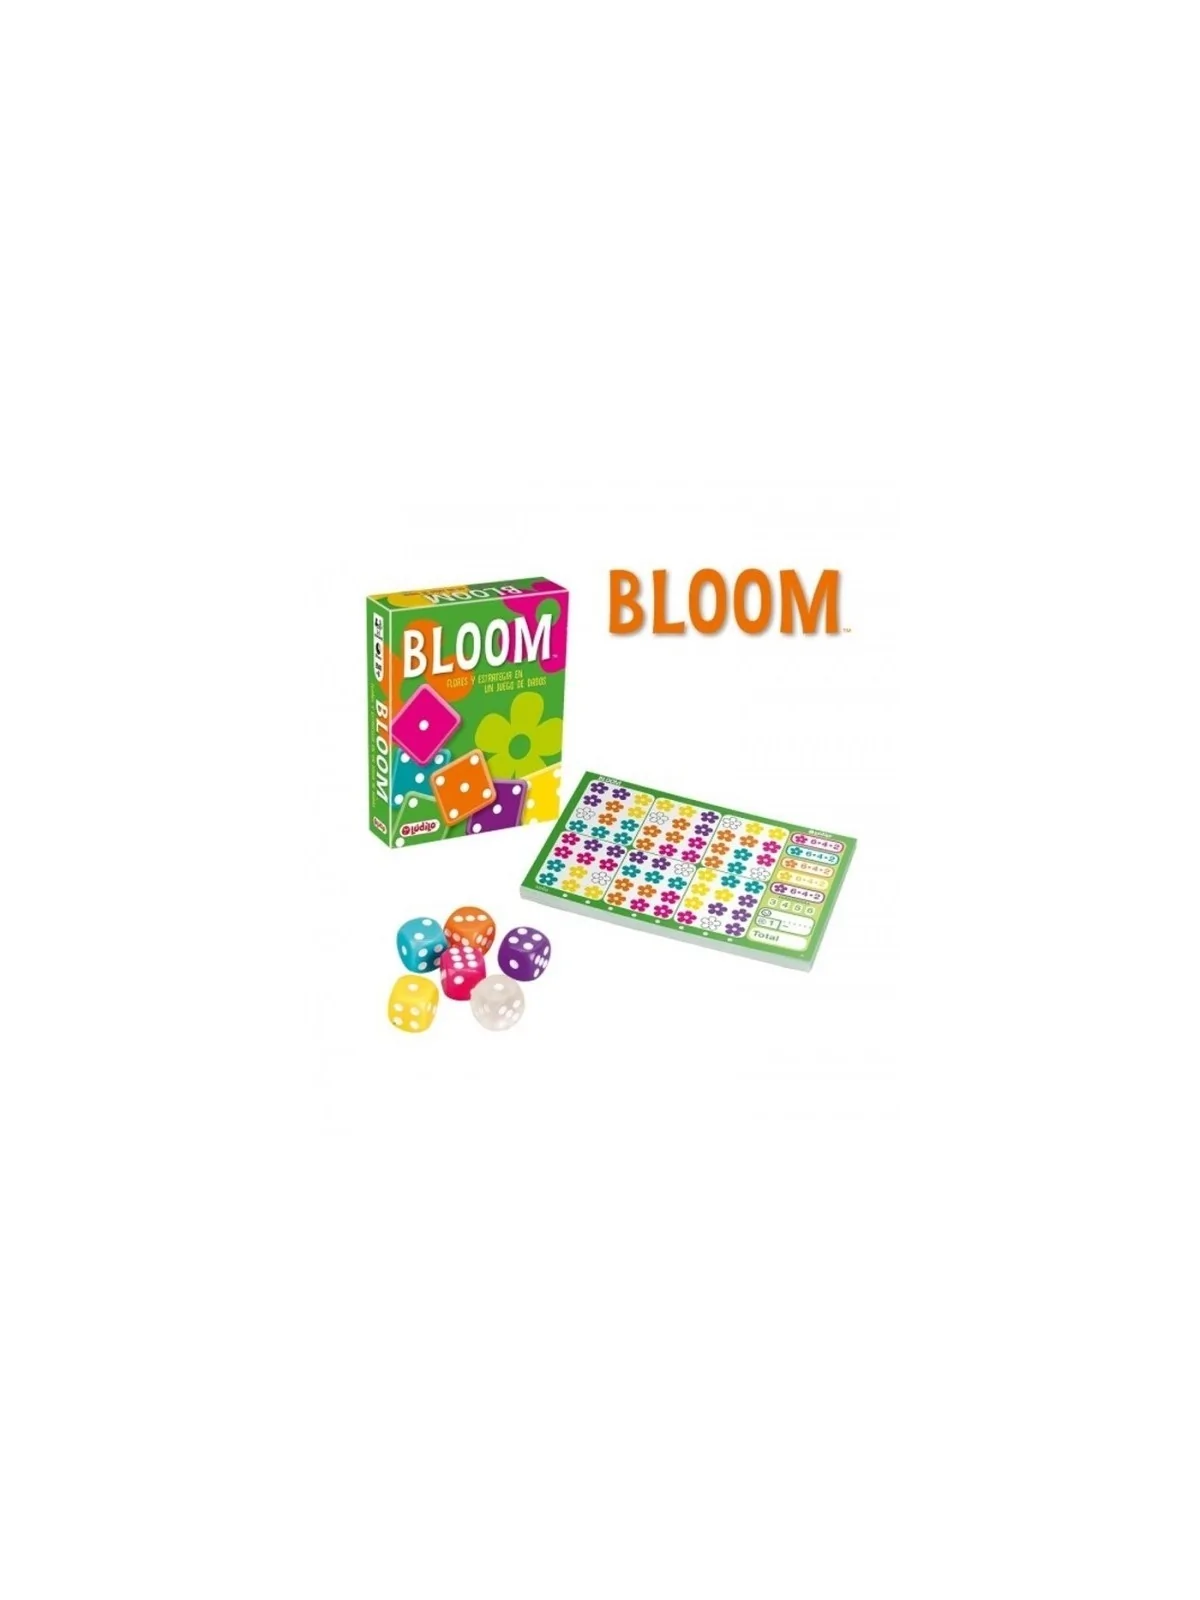 Comprar Bloom barato al mejor precio 13,46 € de TCG Factory